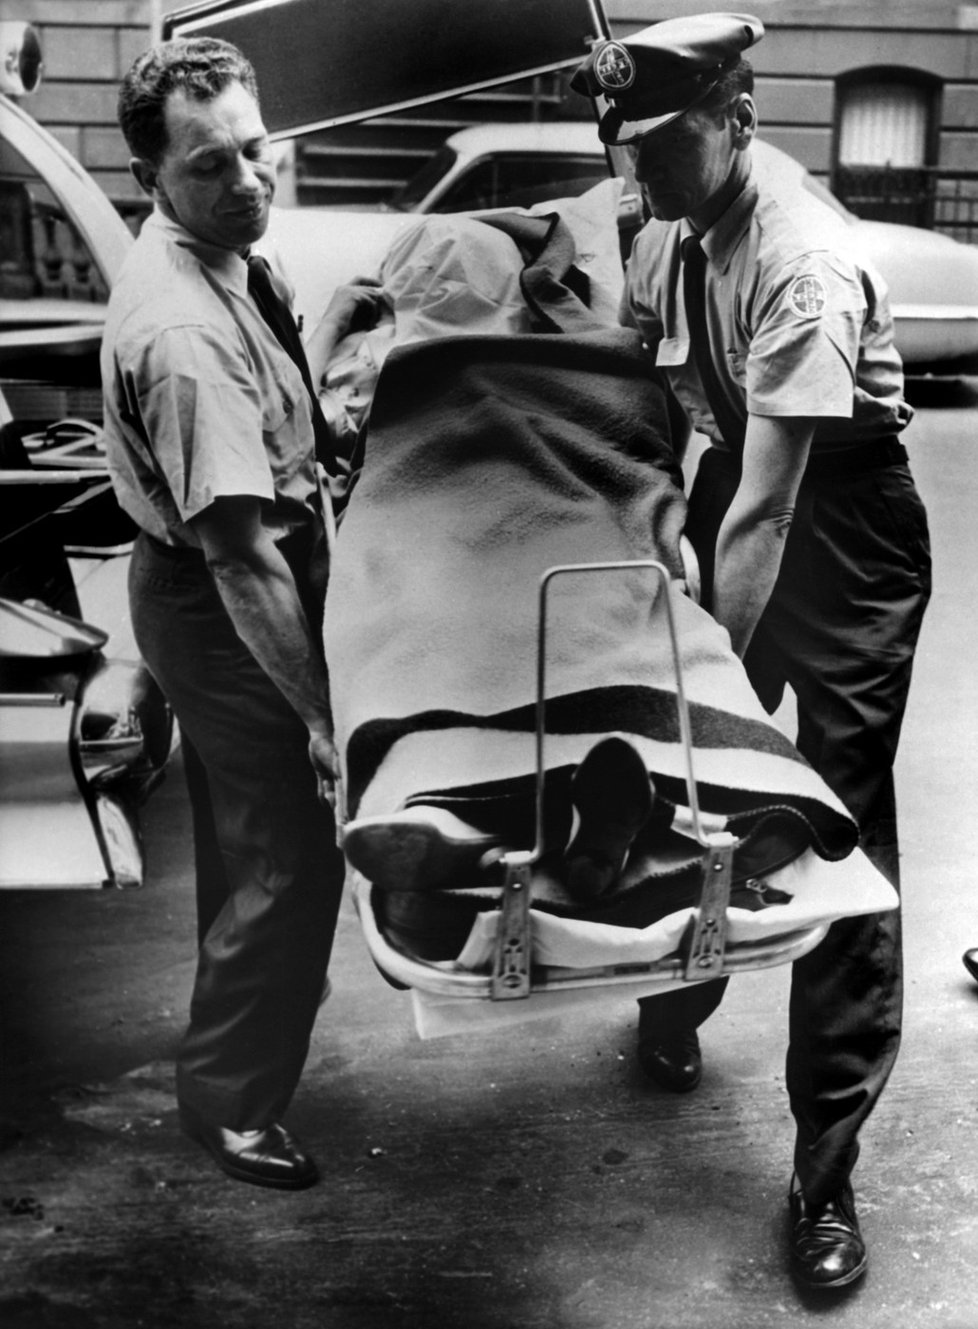 Tělo Marilyn nakládají do vozu k převozu do márnice